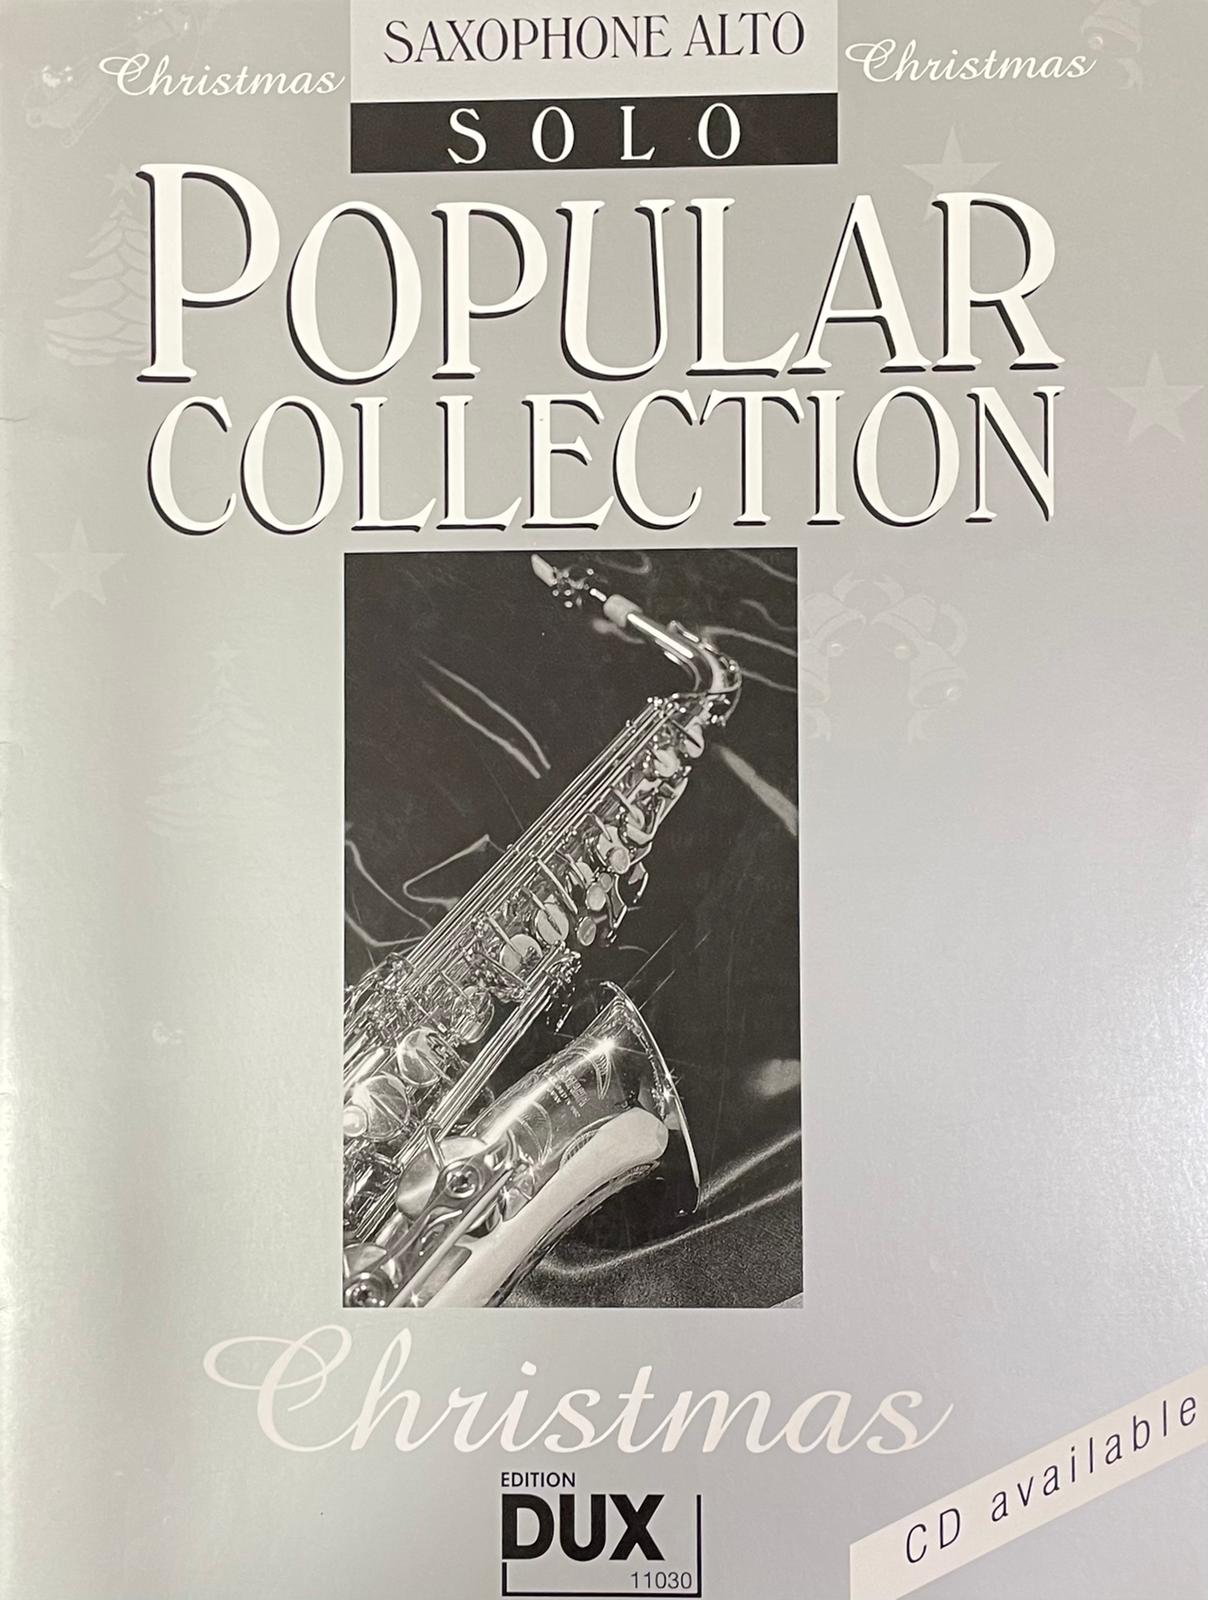 Popular Collection - Saxophone Alto - Solo - Christmas